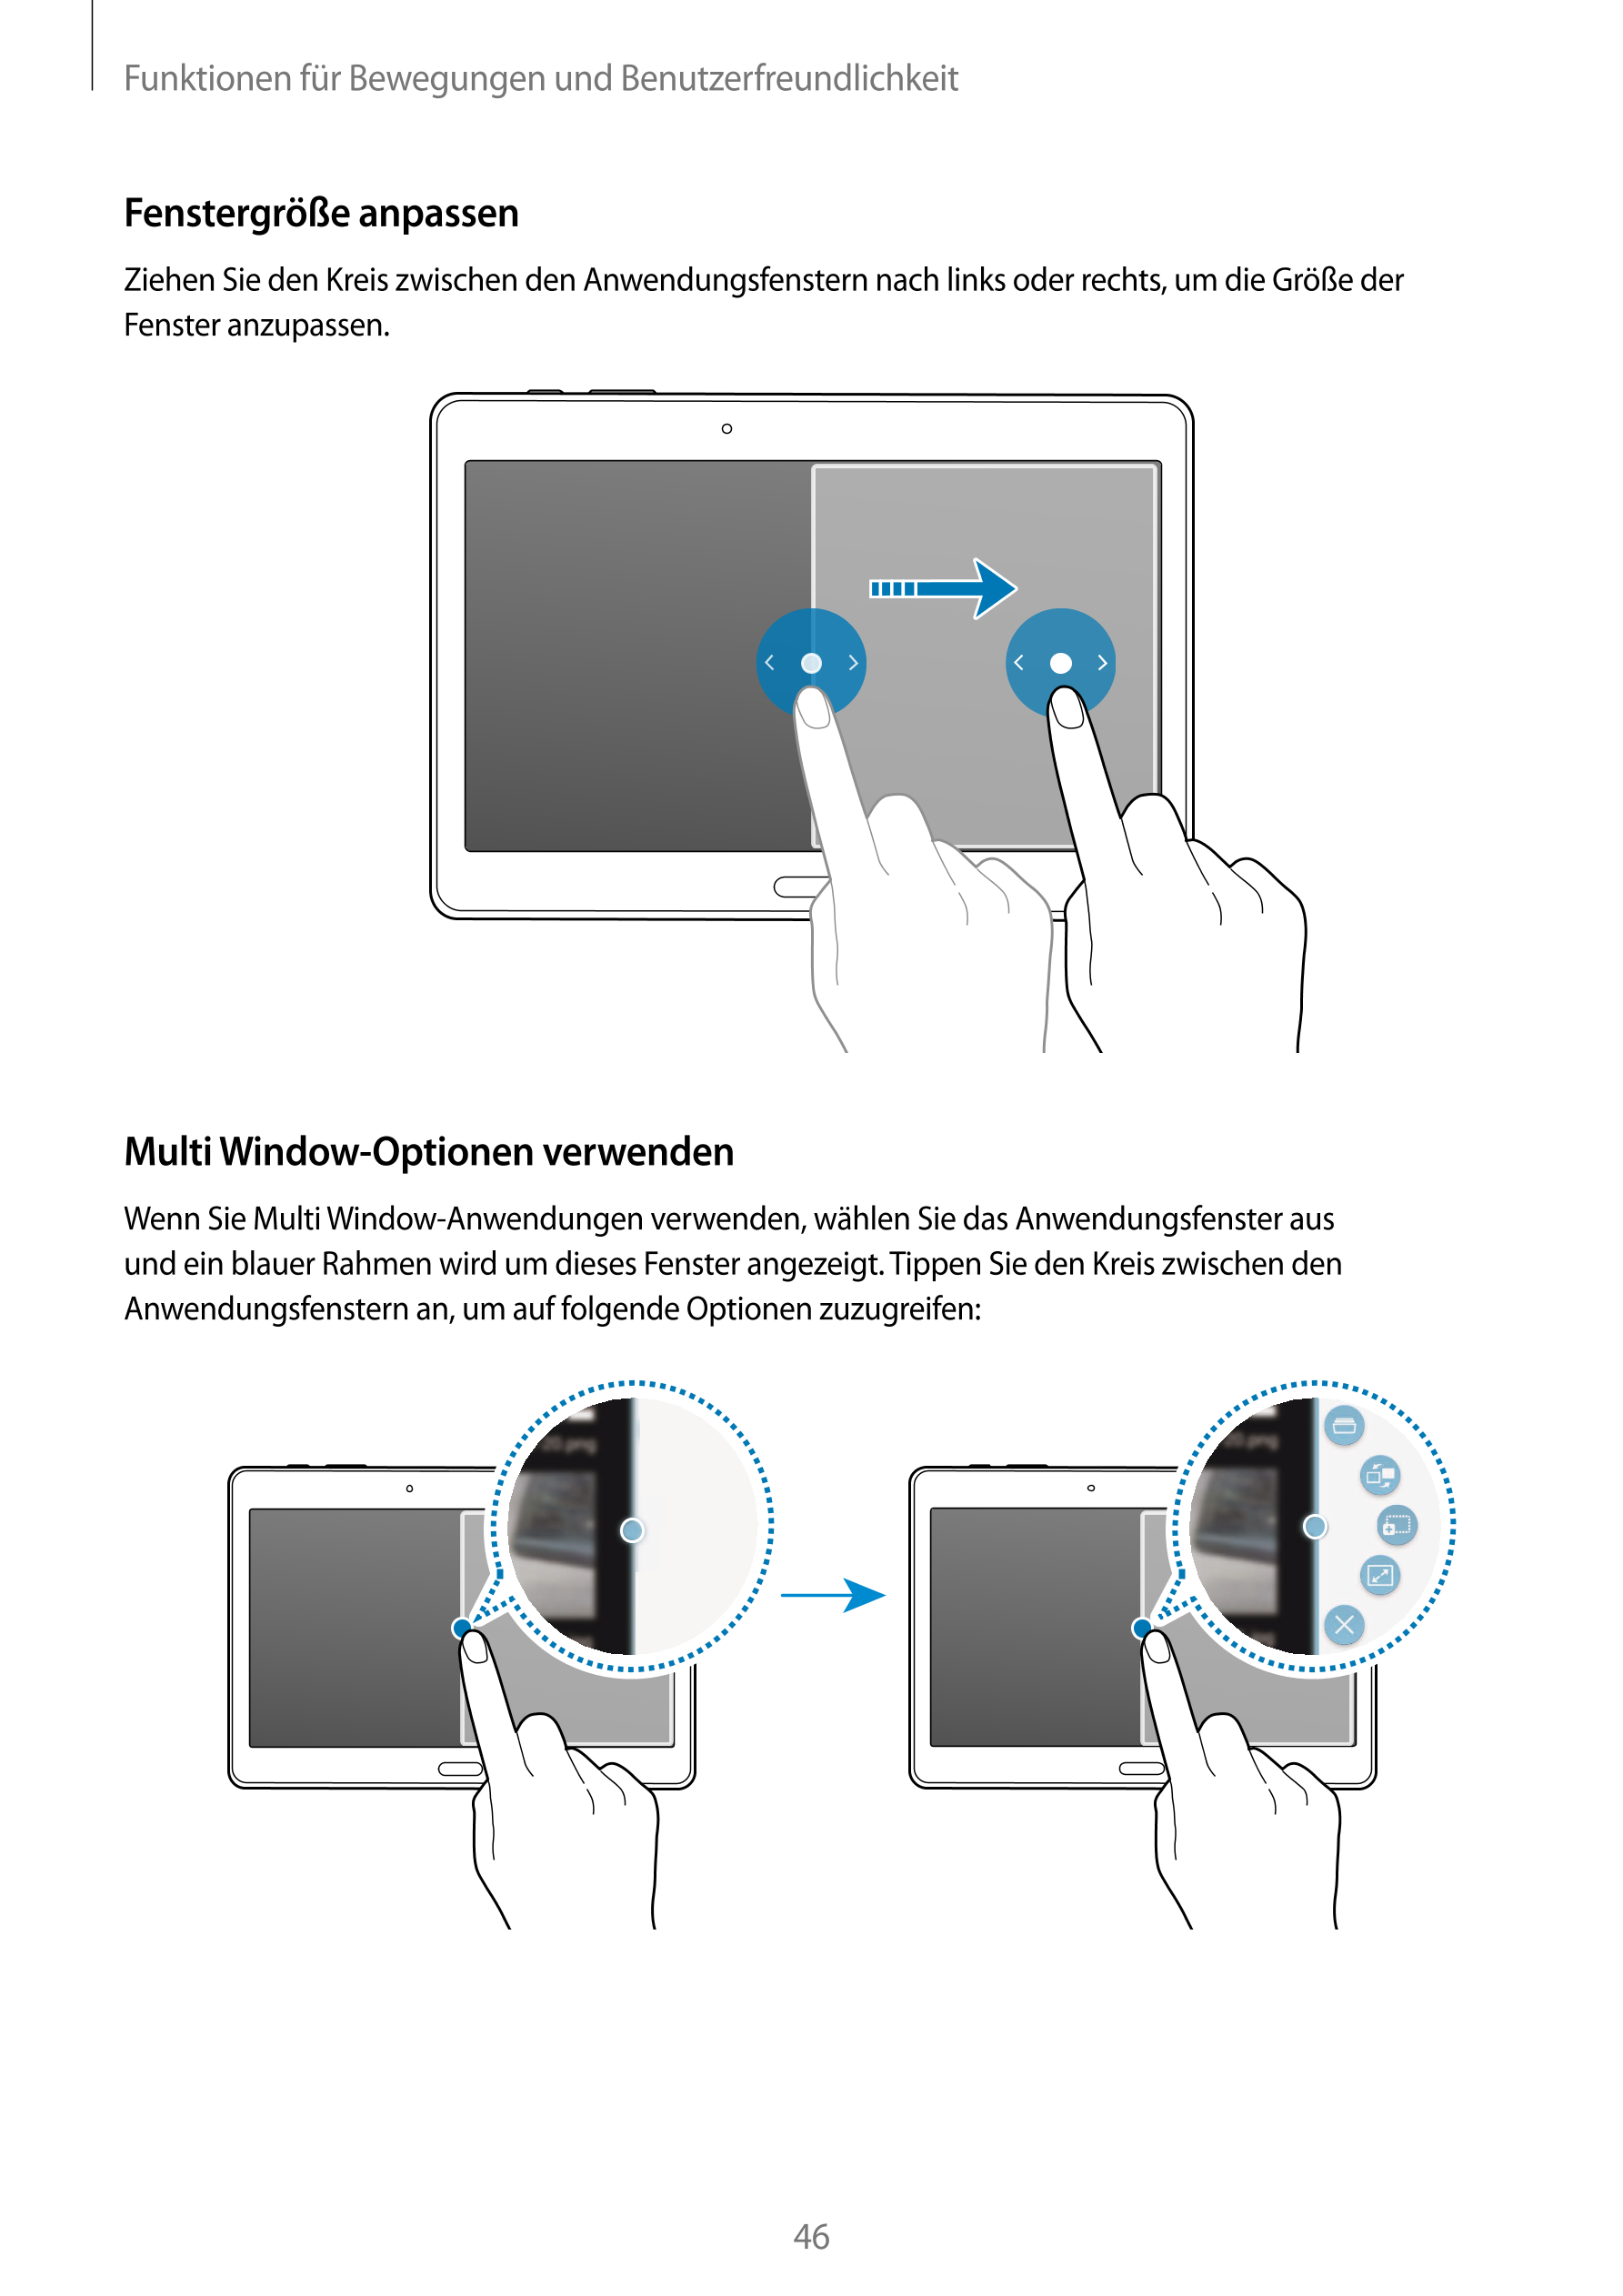 Funktionen für Bewegungen und Benutzerfreundlichkeit
Fenstergröße anpassen
Ziehen Sie den Kreis zwischen den Anwendungsfenstern 